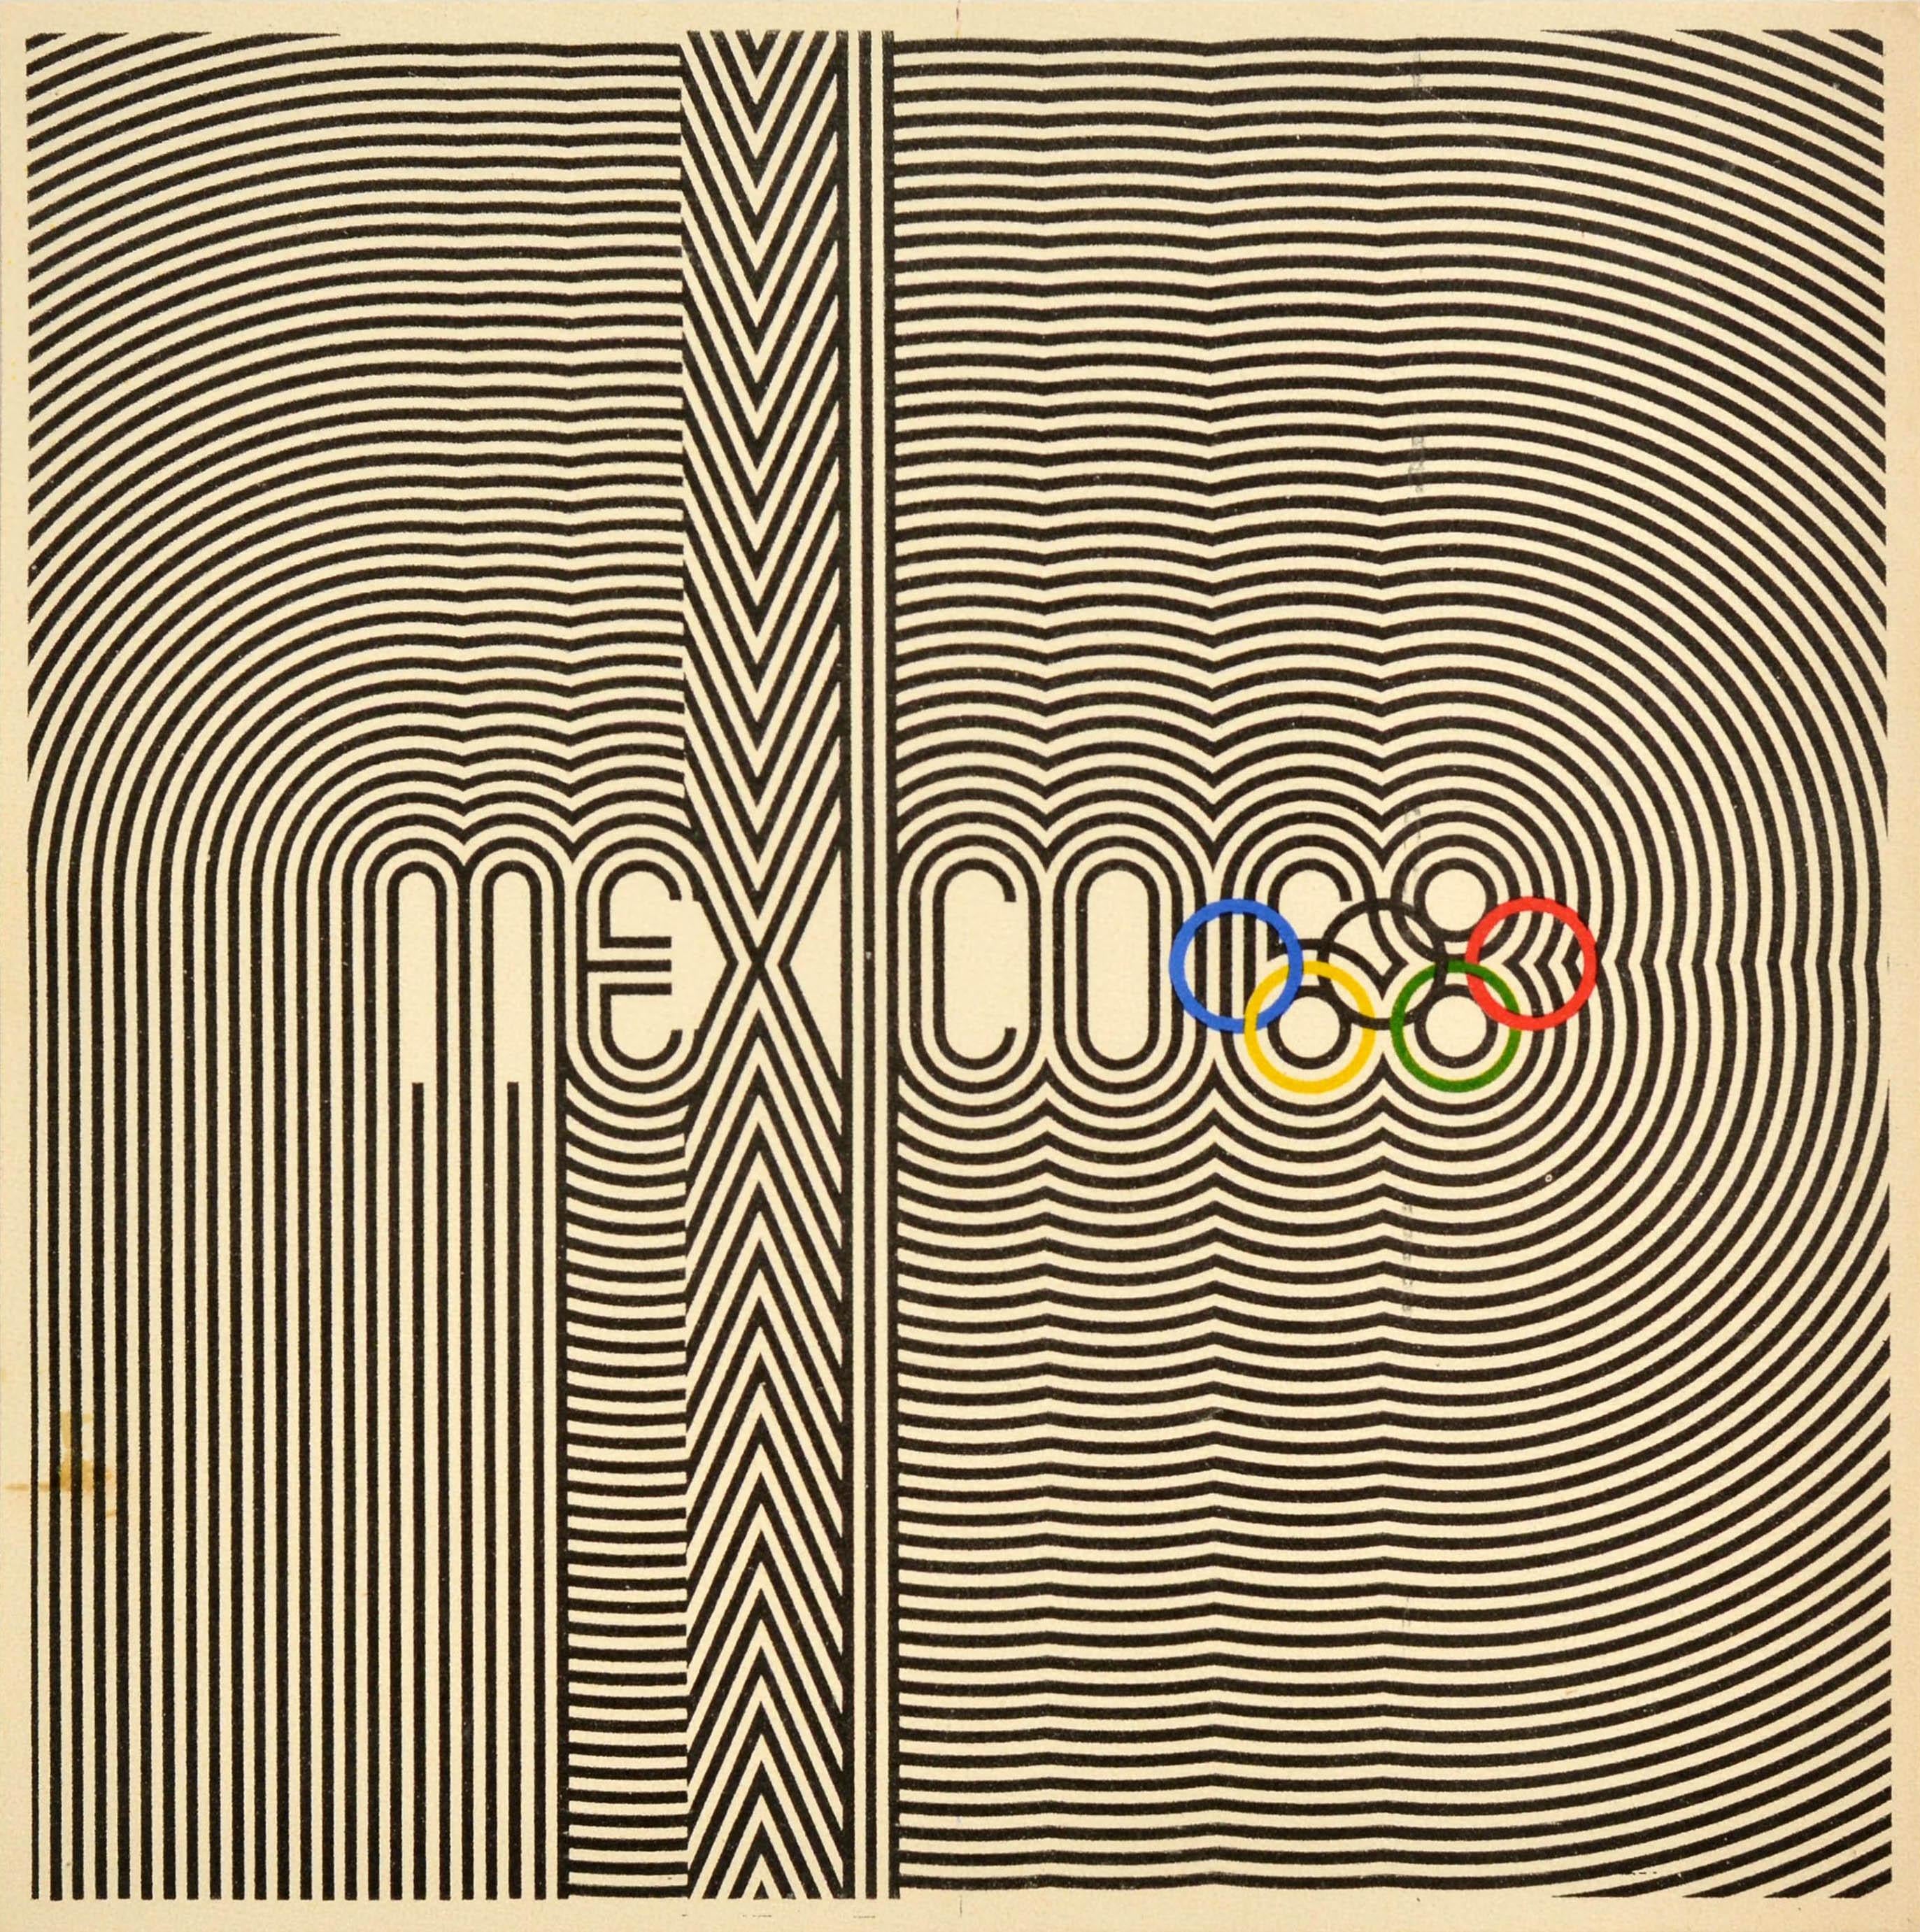 Affiche sportive vintage originale pour les Jeux olympiques de Mexico de 1968, officiellement connus sous le nom de Jeux de la XIXe Olympiade, qui se sont déroulés du 12 au 27 octobre 1968. Le logo iconique de l'événement, conçu par le célèbre